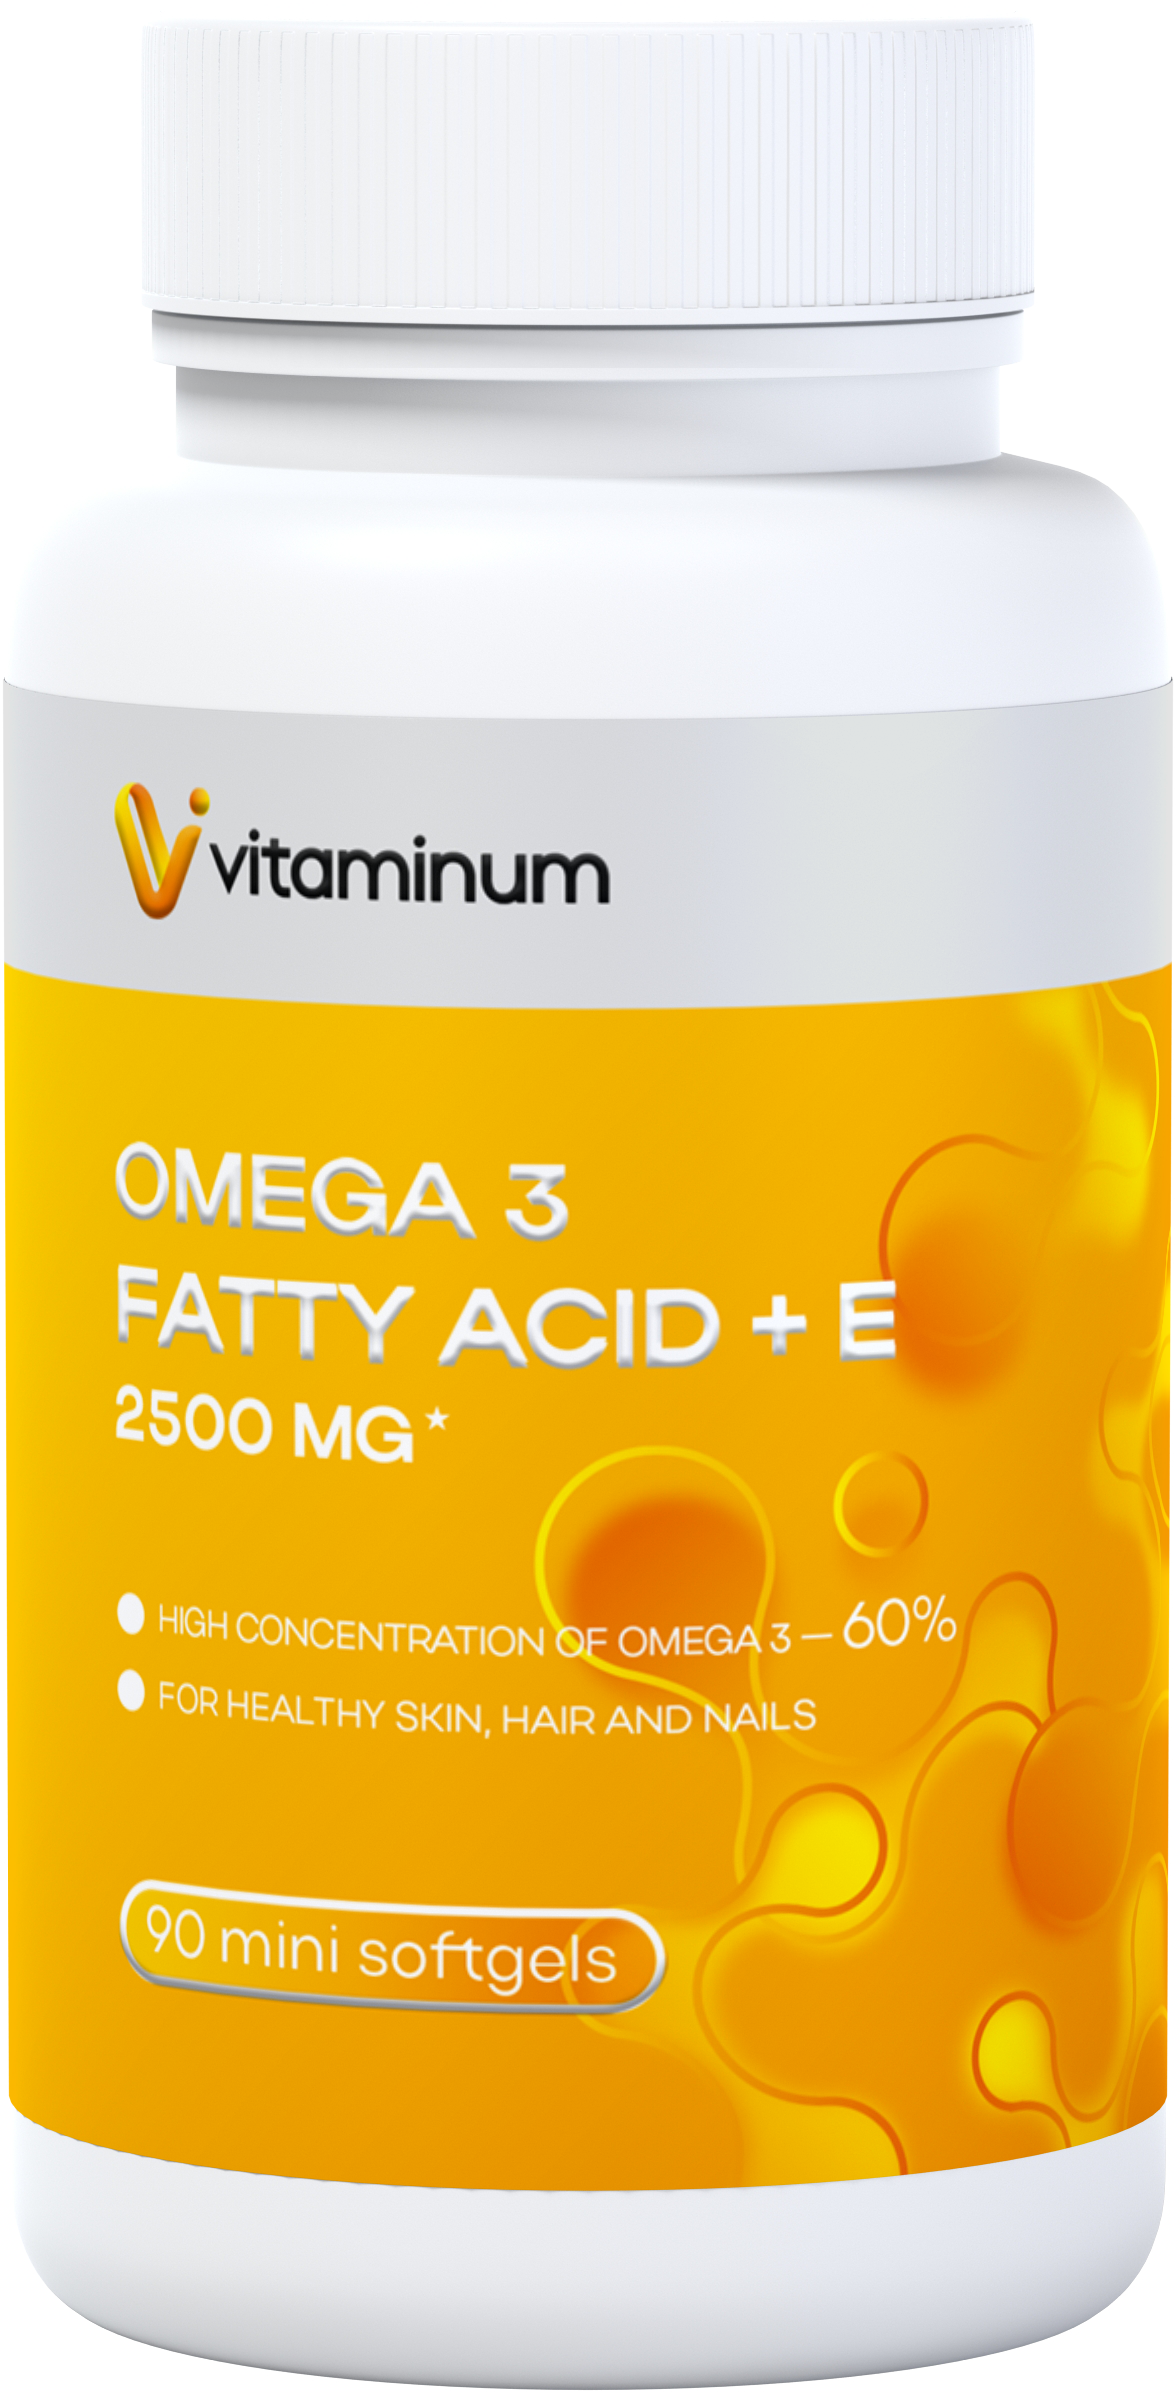  Vitaminum ОМЕГА 3 60% + витамин Е (2500 MG*) 90 капсул 700 мг  в Стрежевое